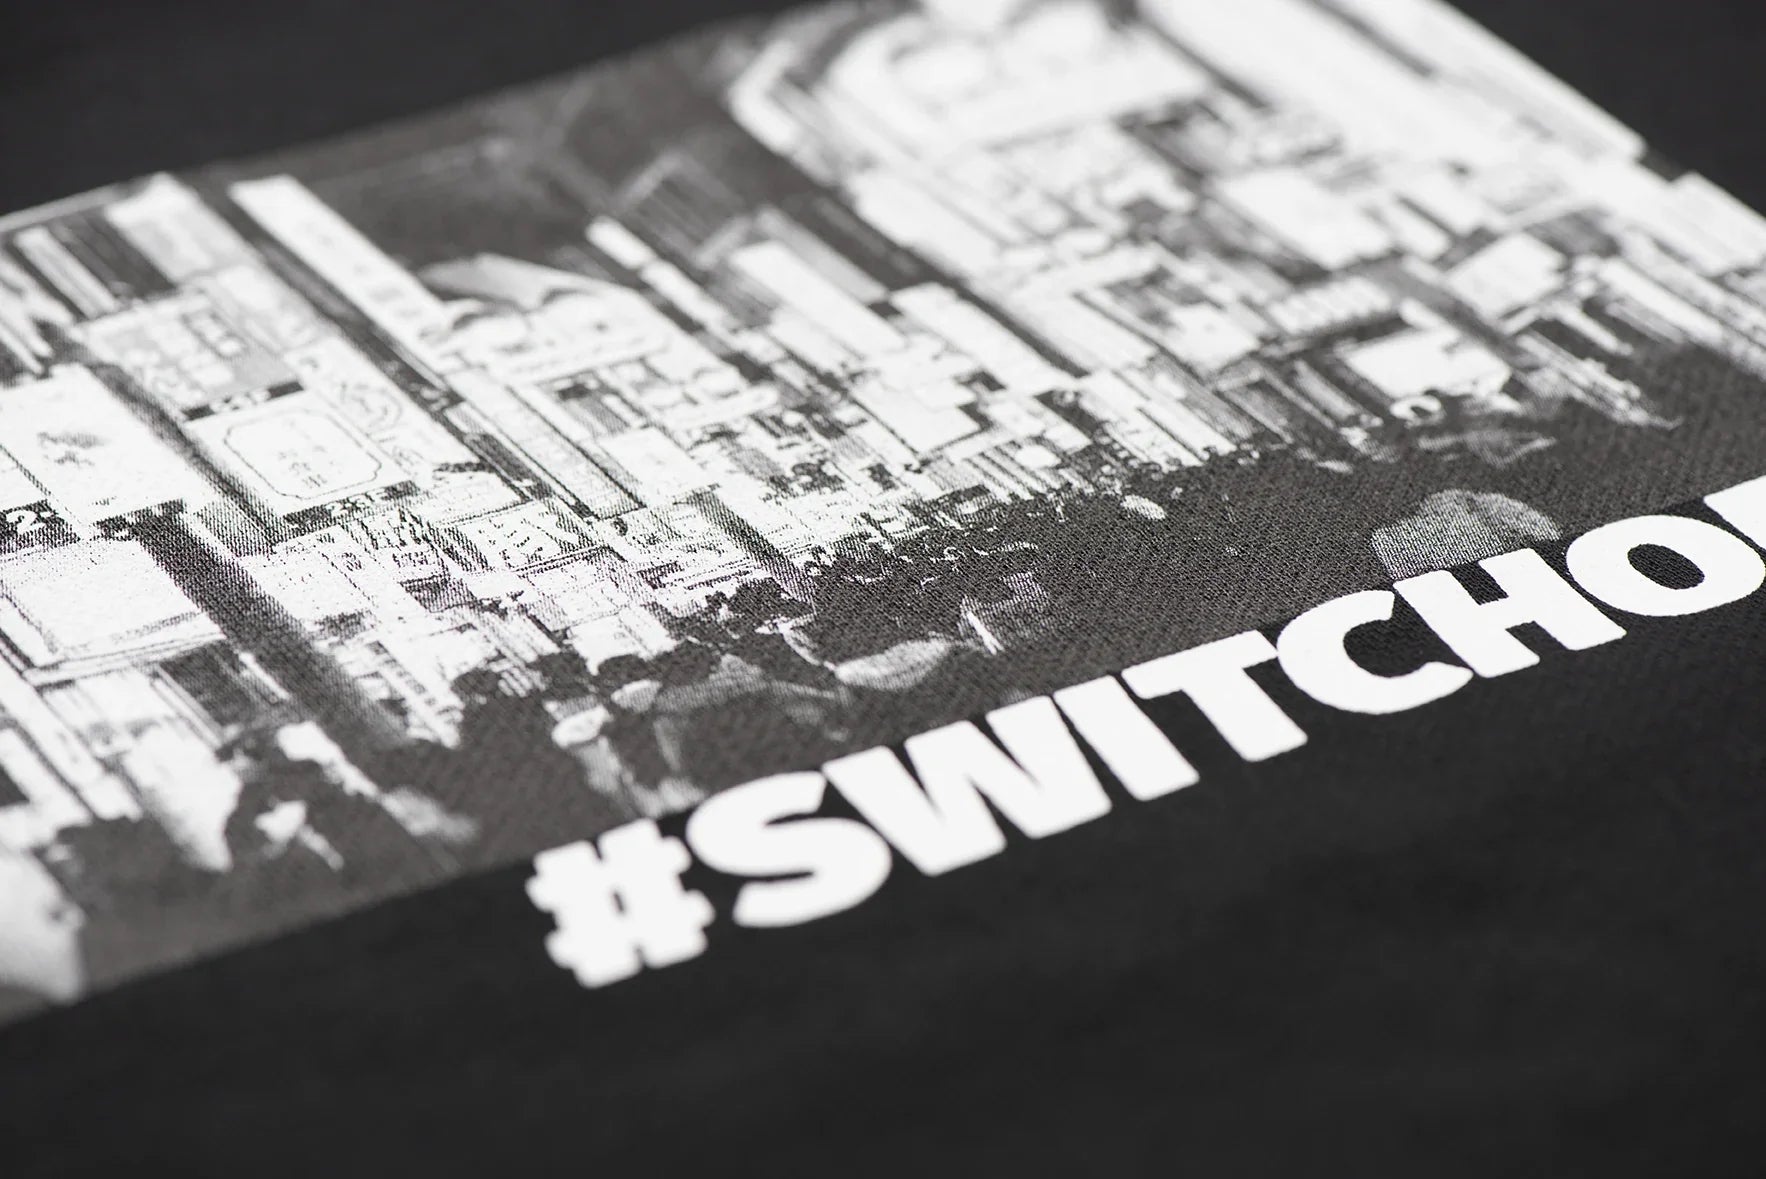 Sweat Switch Off - Noir -f